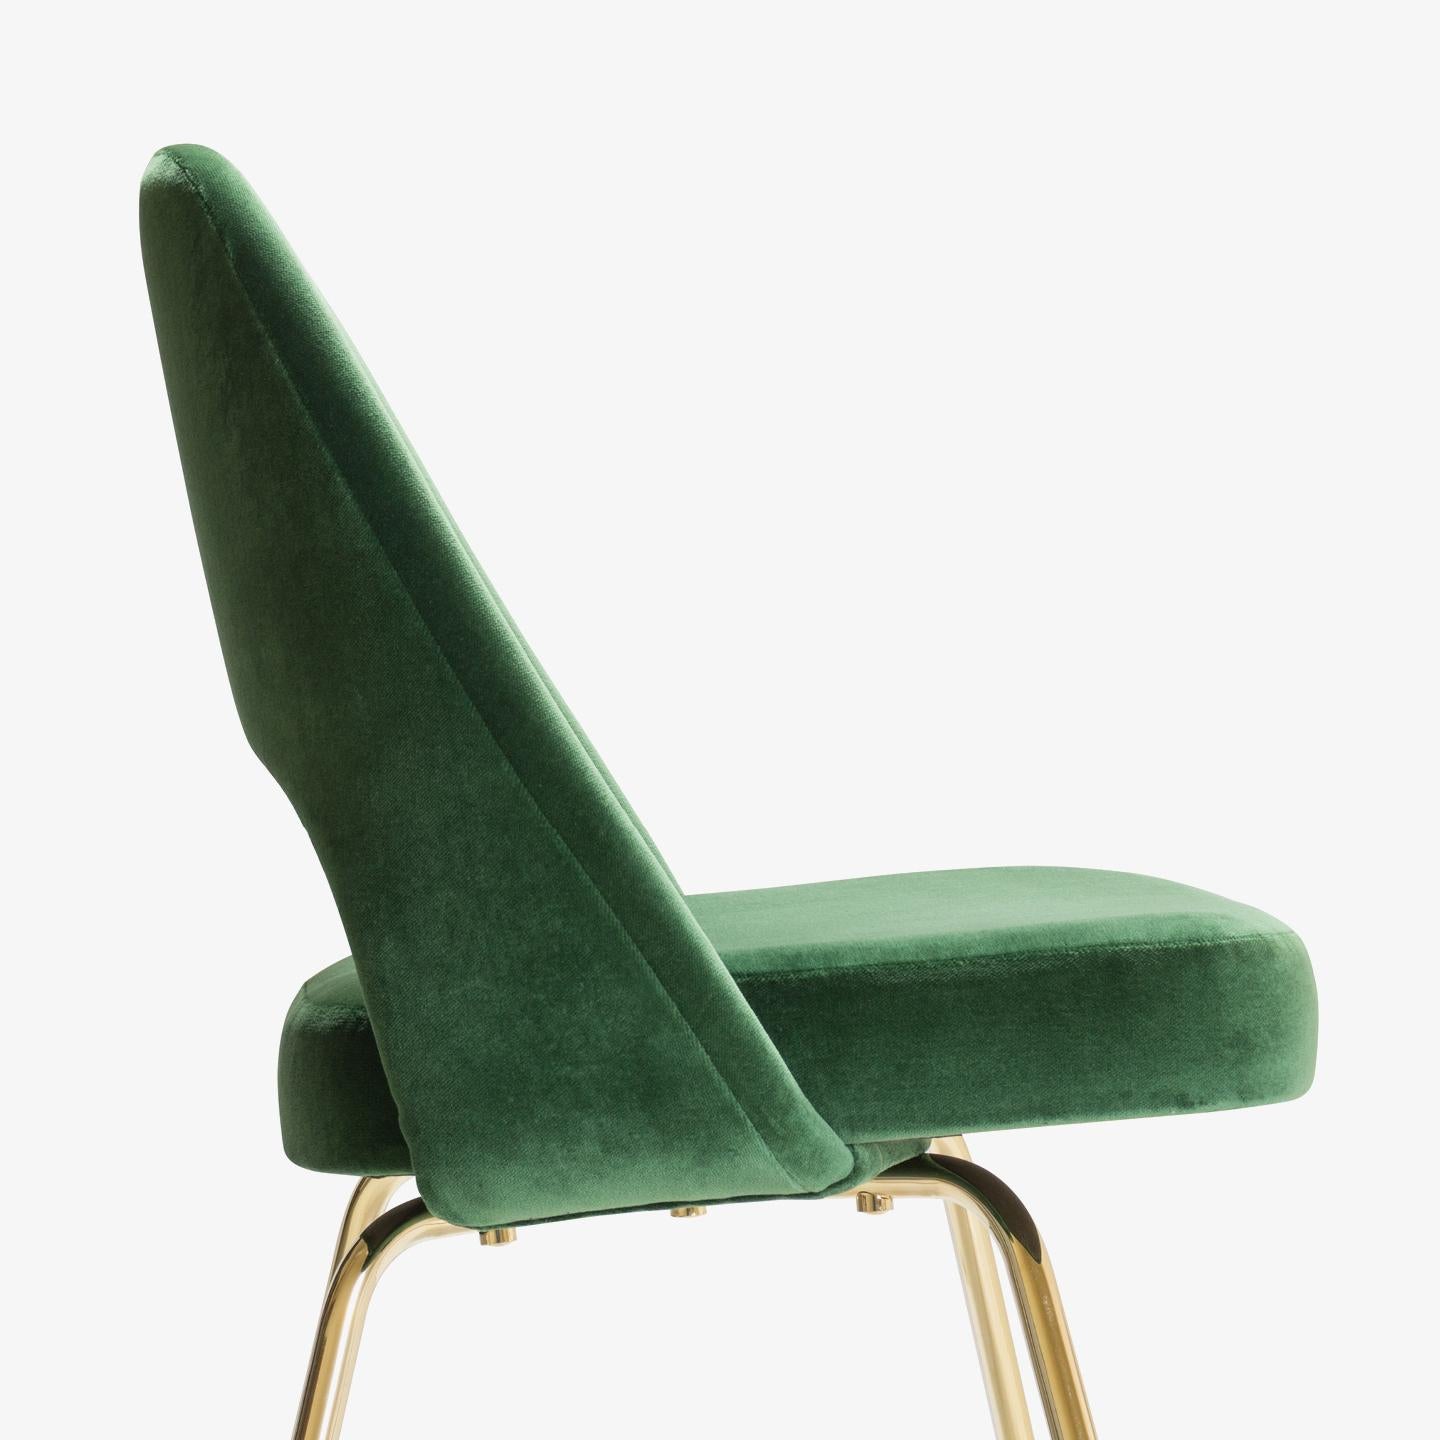 Die nächste Generation von Eero Saarinens berühmten Chefsesseln ist da: 100% authentische Eero Saarinen for Knoll Executive Chairs, die von Grund auf restauriert und mit einem zusätzlichen Hauch von Gold versehen wurden.

Wir restaurieren seit